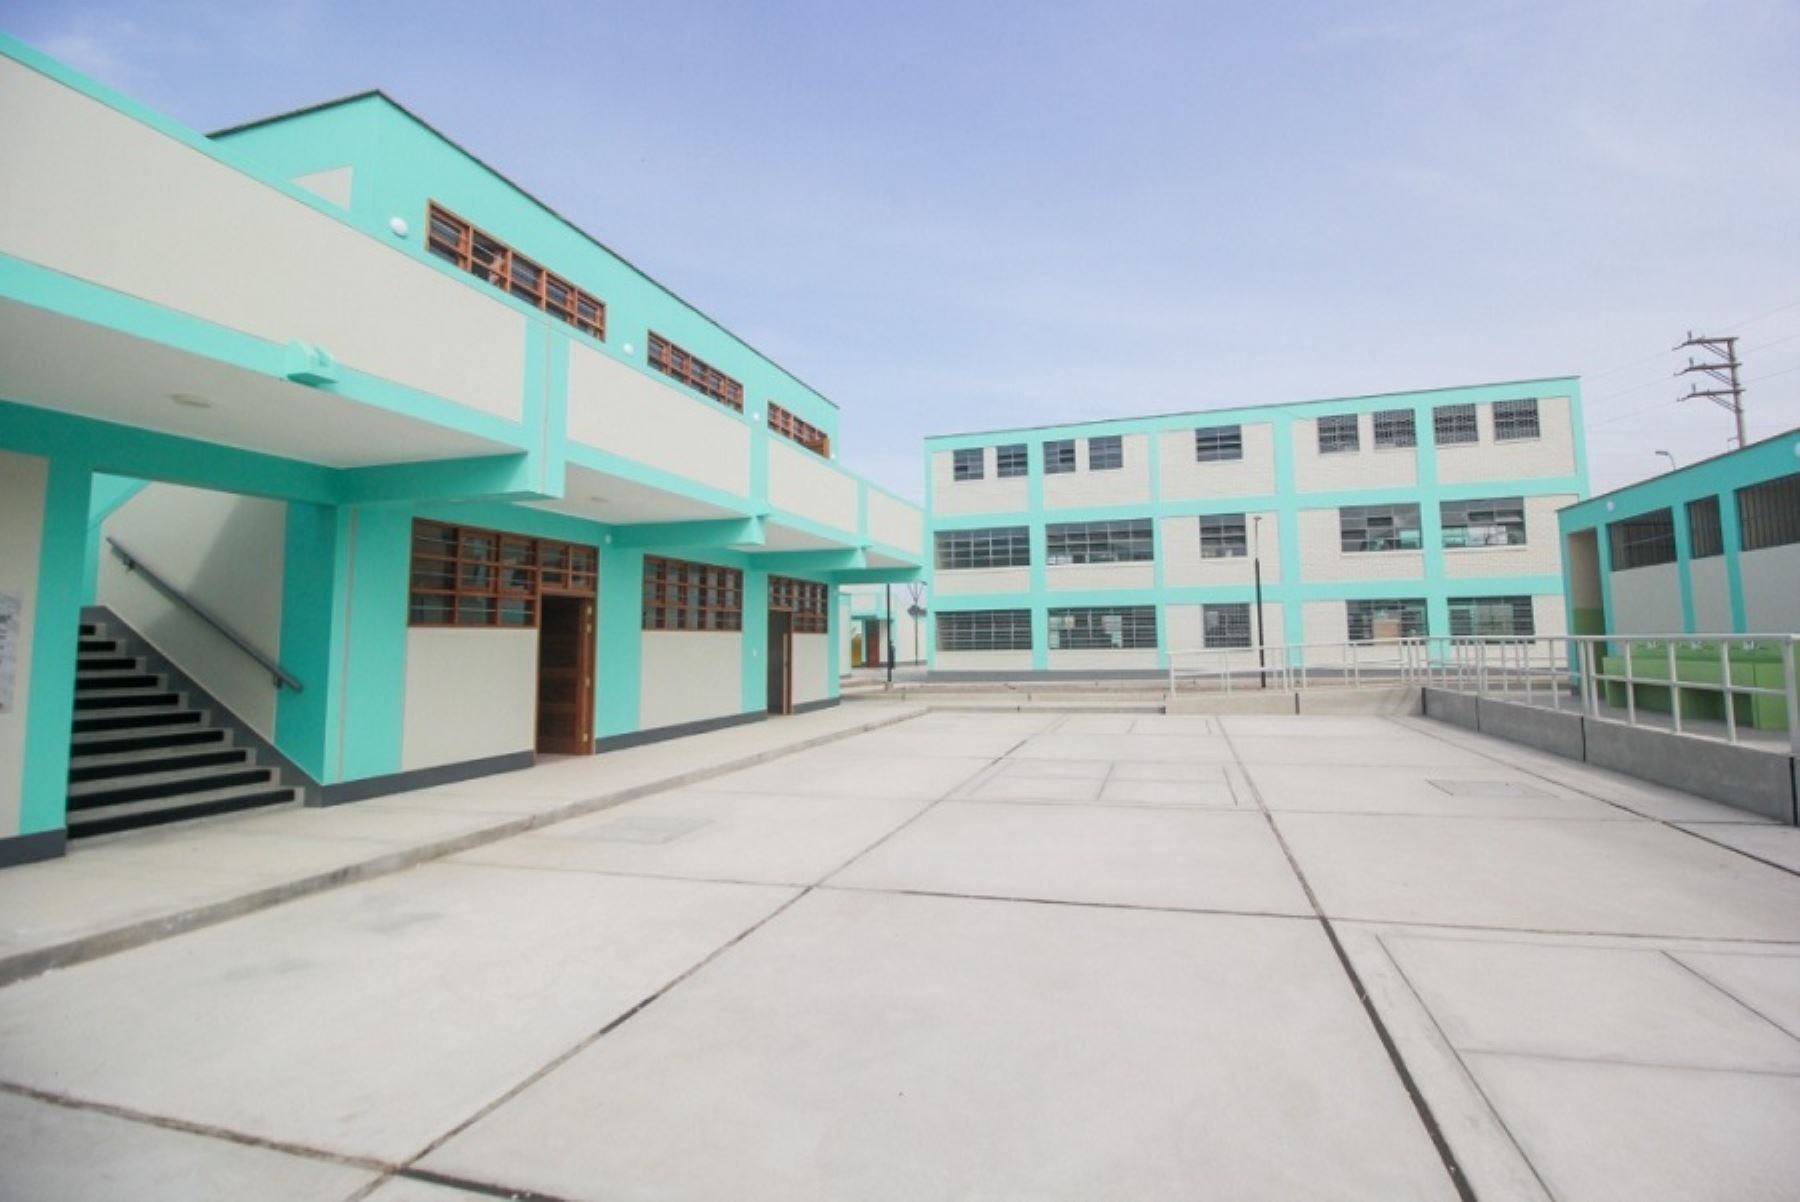 Desde el 2017 hasta la fecha la ARCC ha entregado 770 colegios reconstruidos en las 13 regiones del país que fueron afectadas por el fenómeno de El Niño costero.